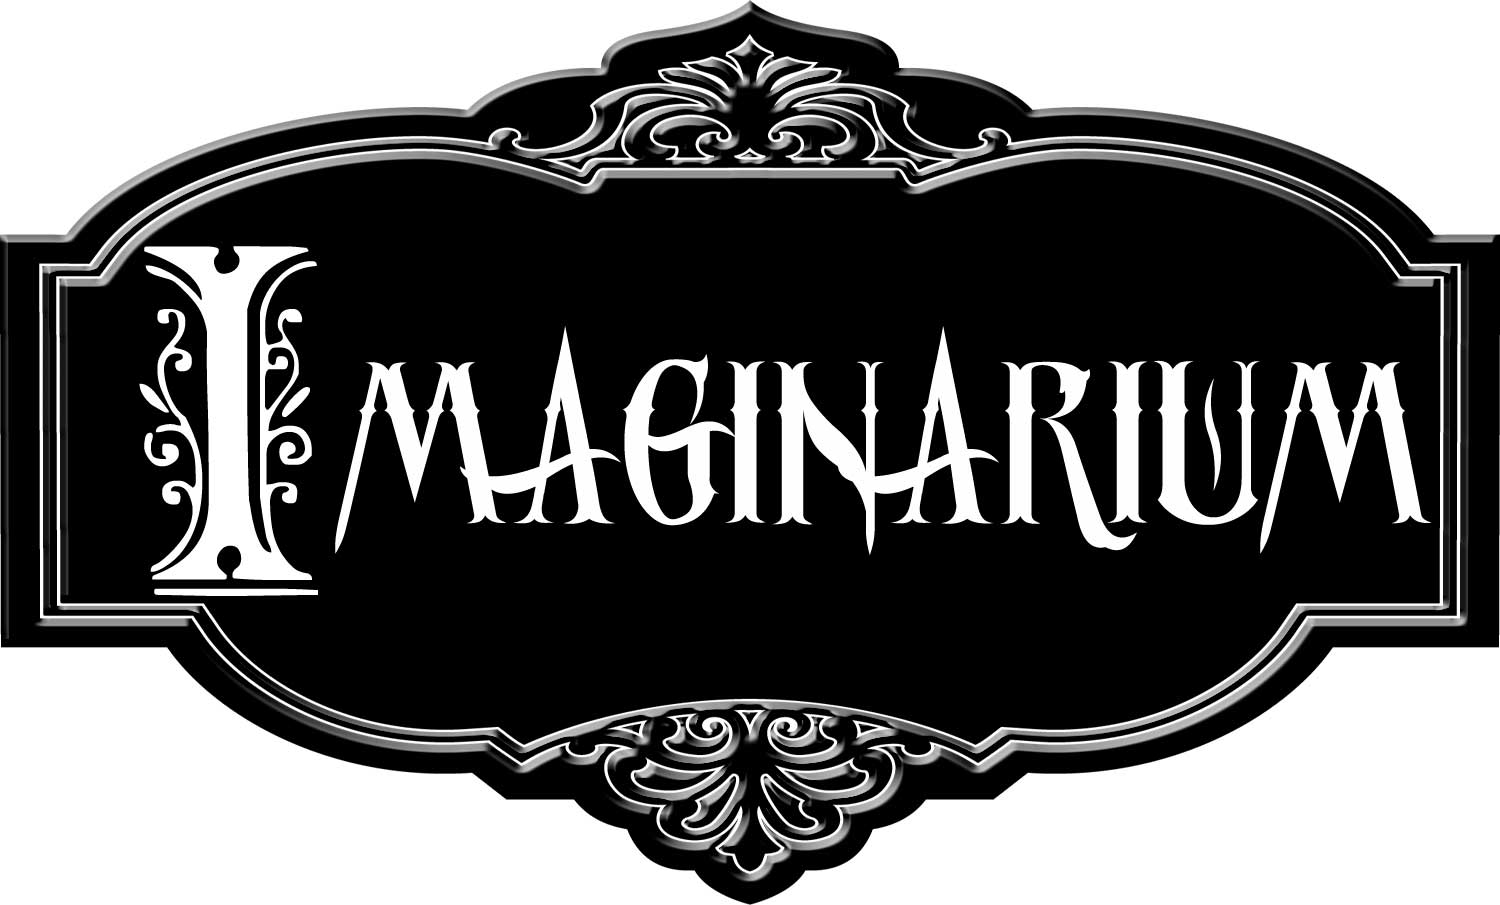 See me at Imaginarium in Louisville this weekend!